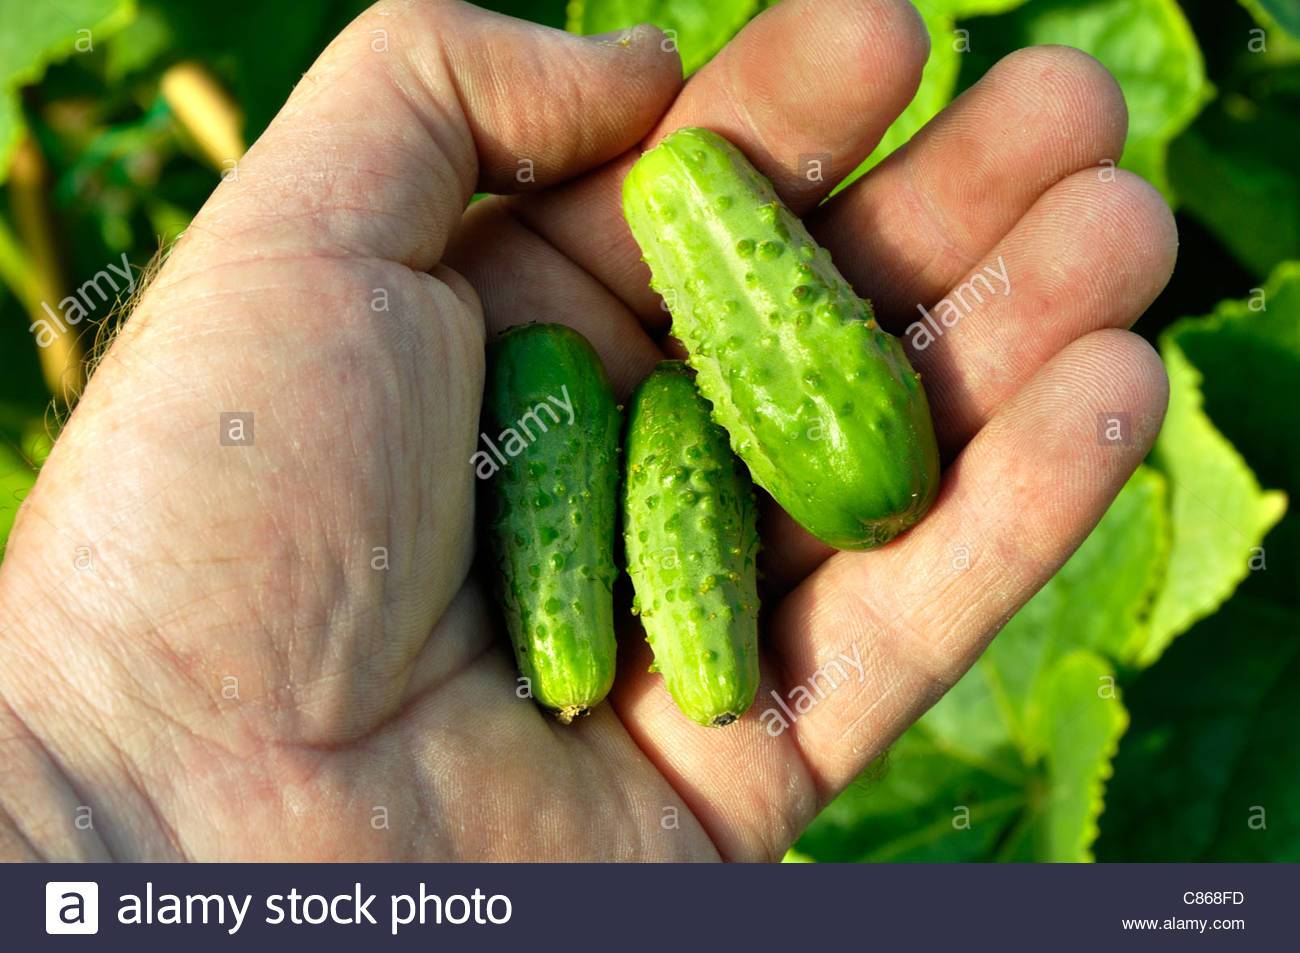 picklesminicucumbersvarietypetitdeparisc 1 - How does your garden grow?